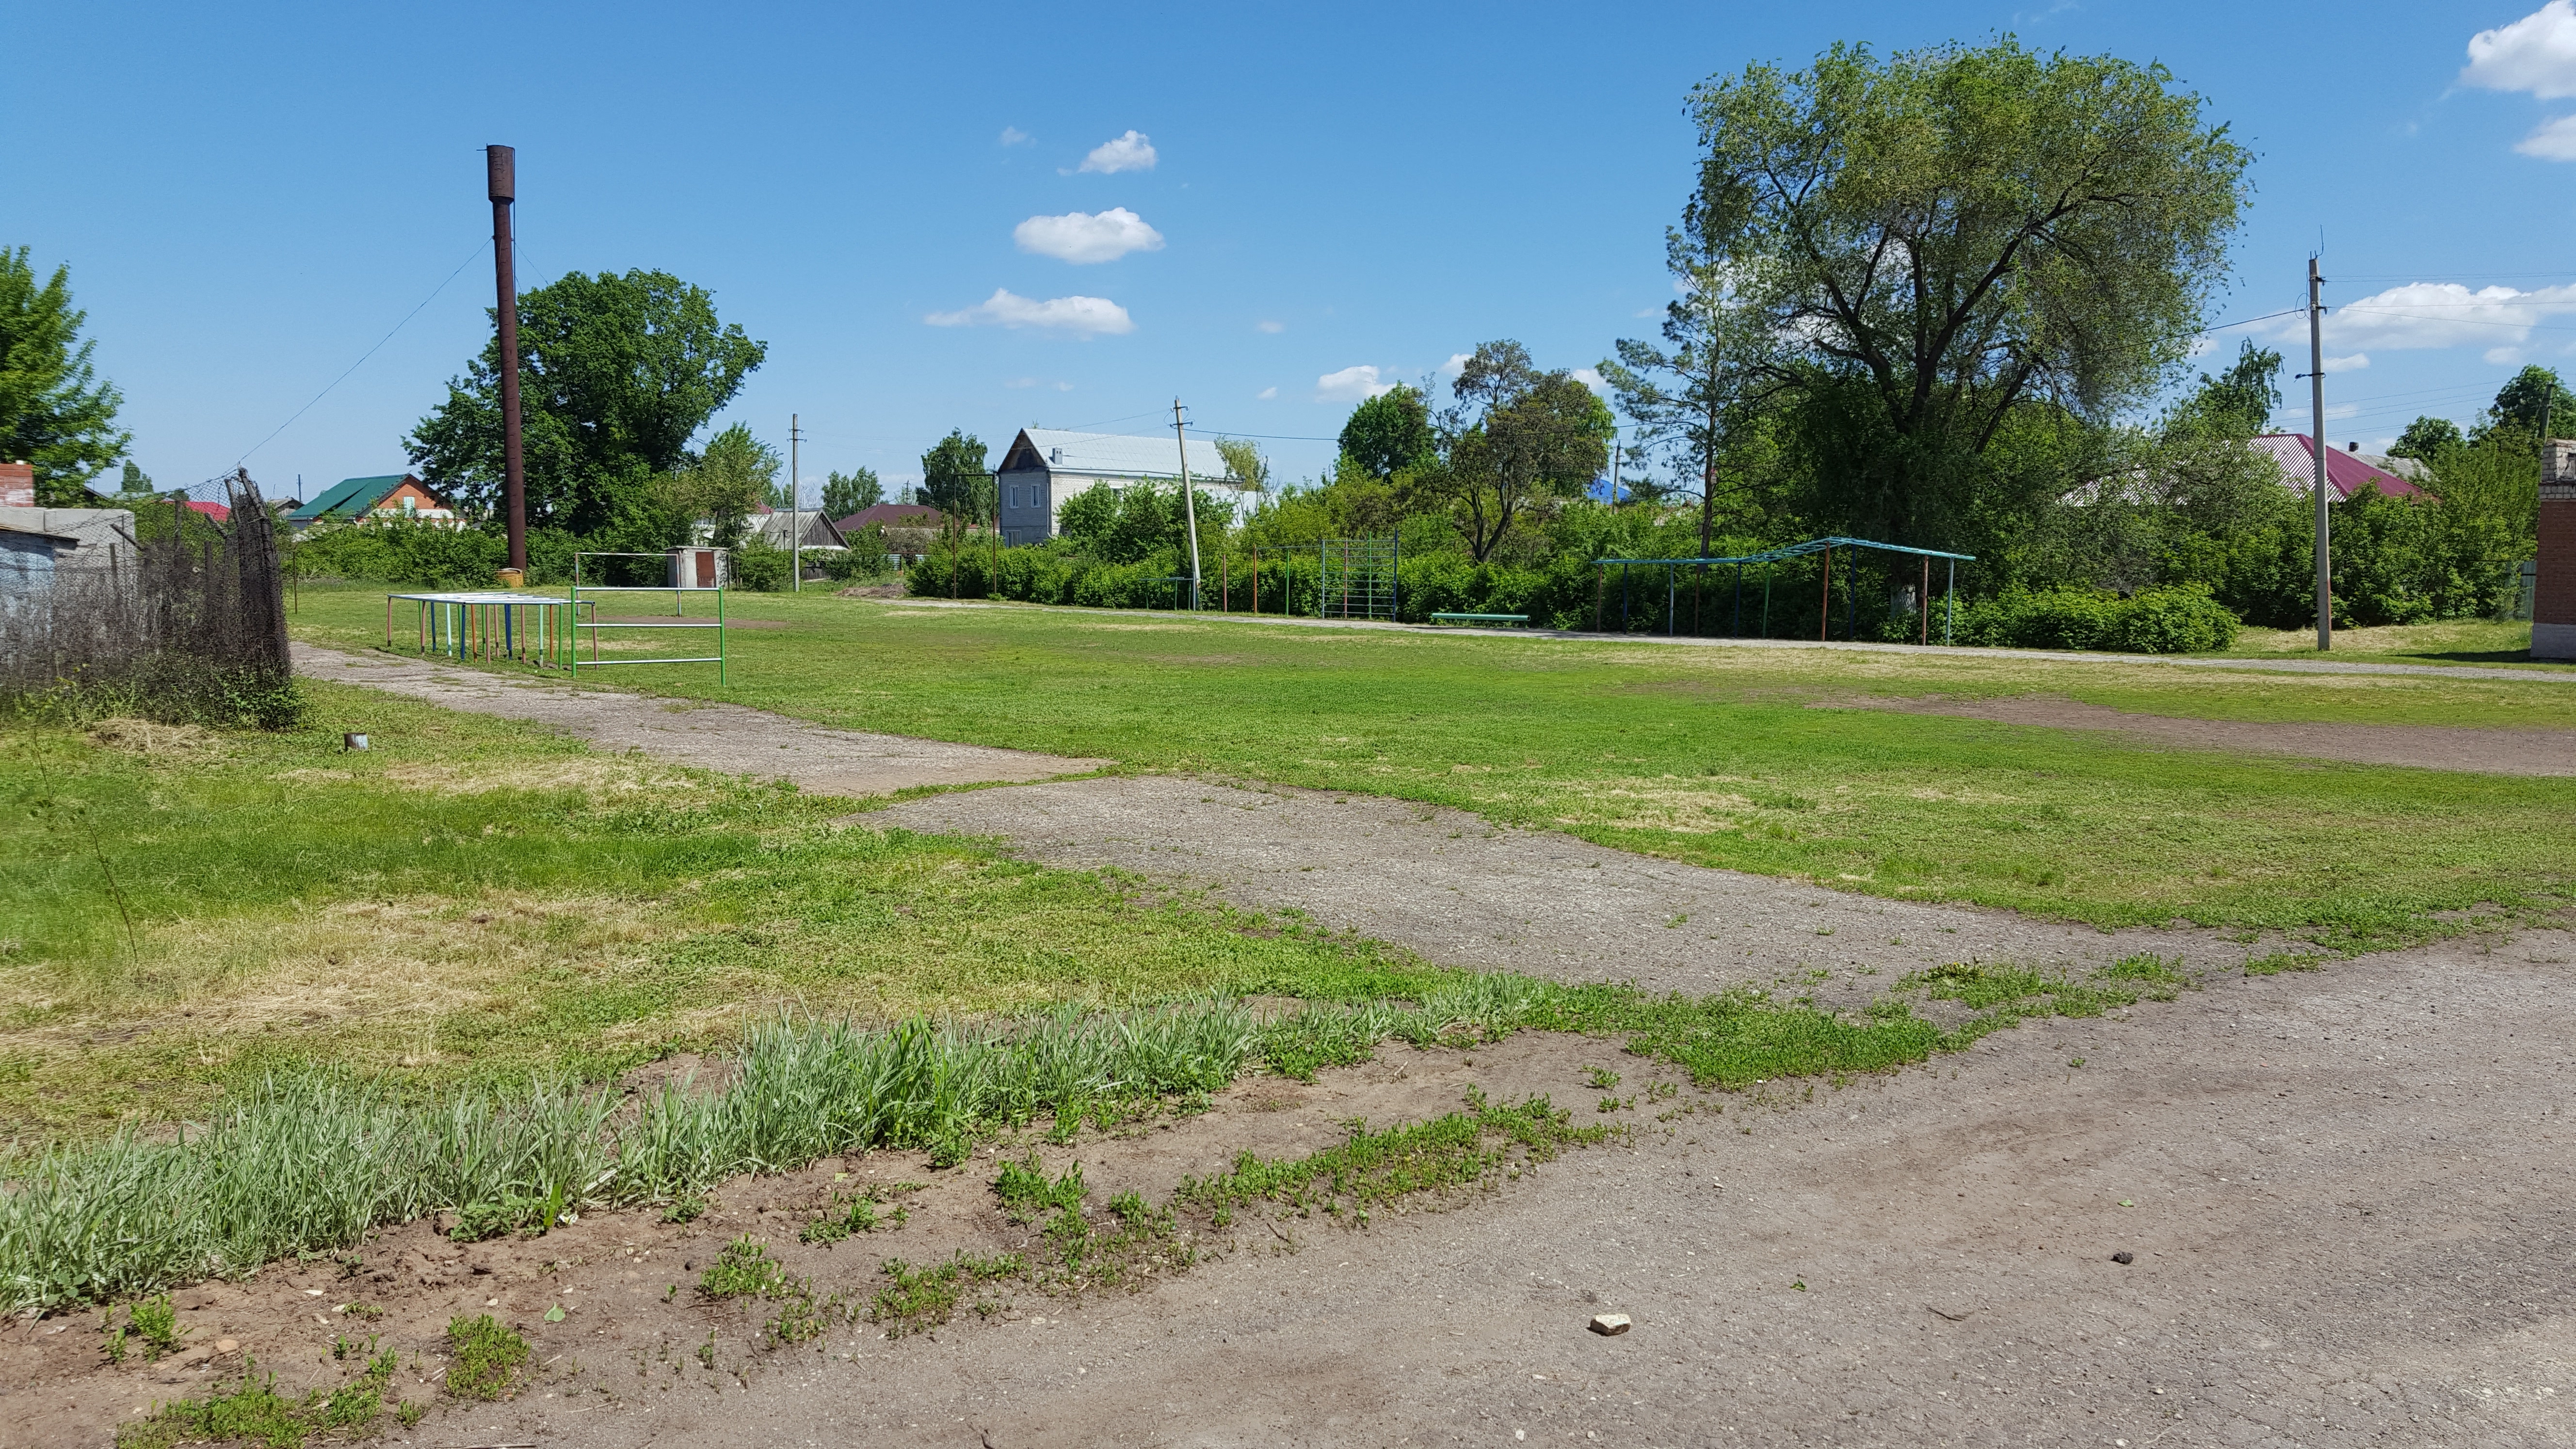 Спортивная площадка для занятий легкой атлетикой и футбольное поле